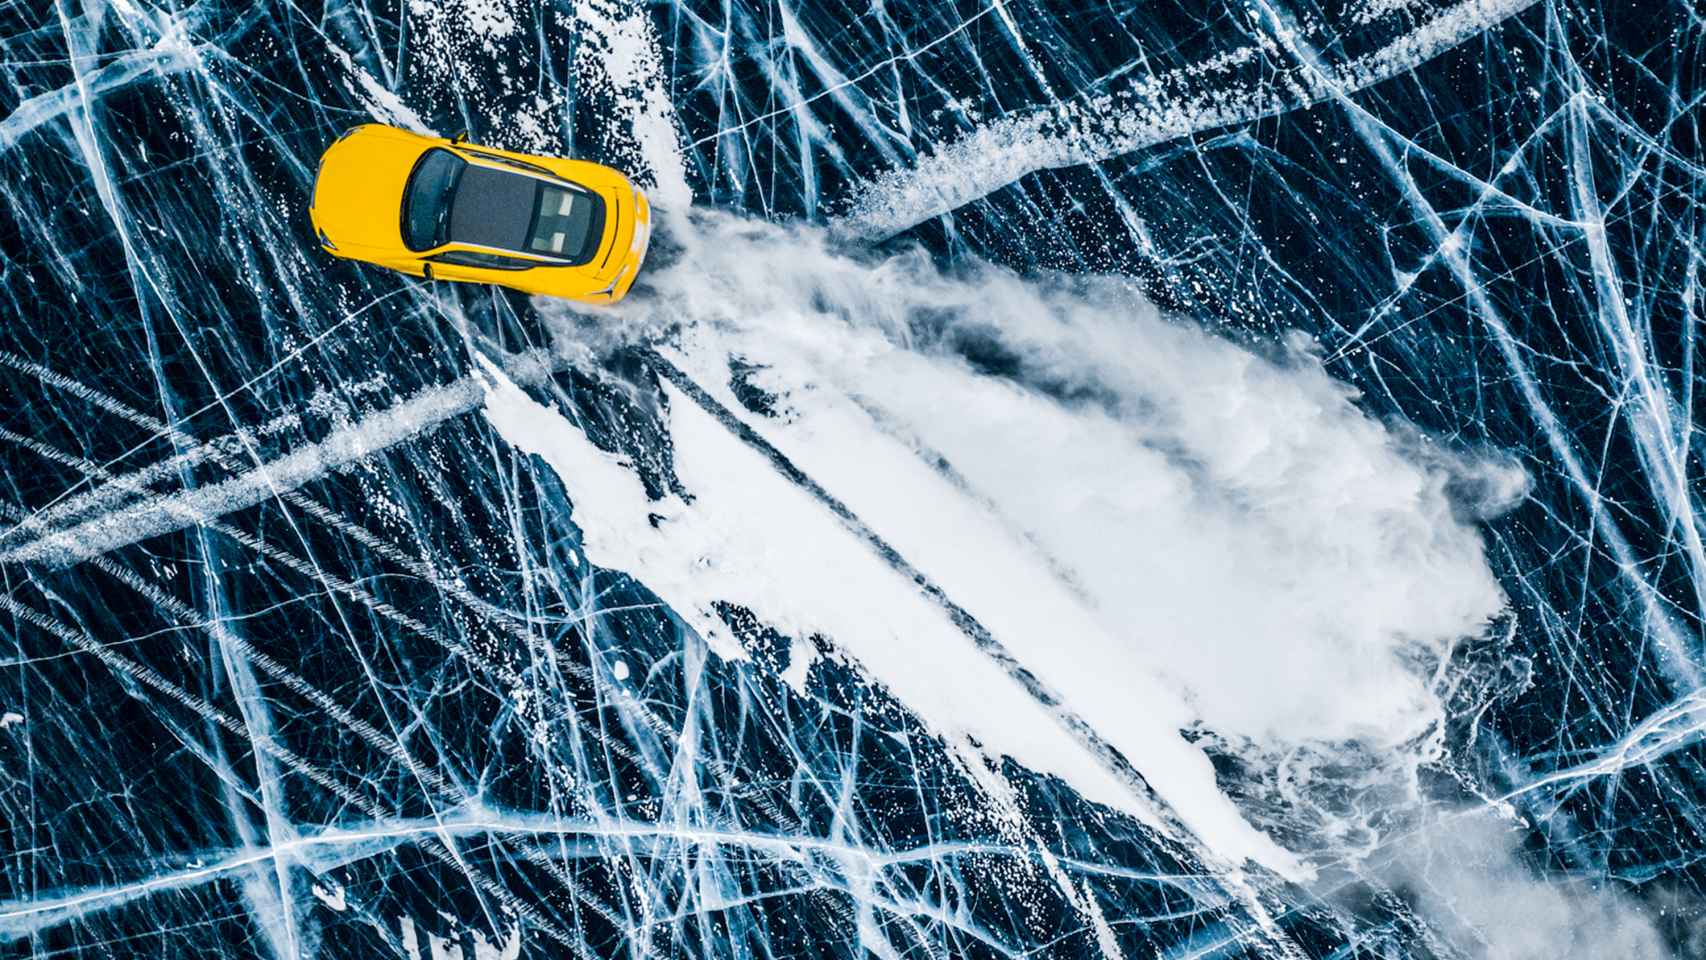 Conducir en hielo es más difícil que en nieve, es como circular en aceite.